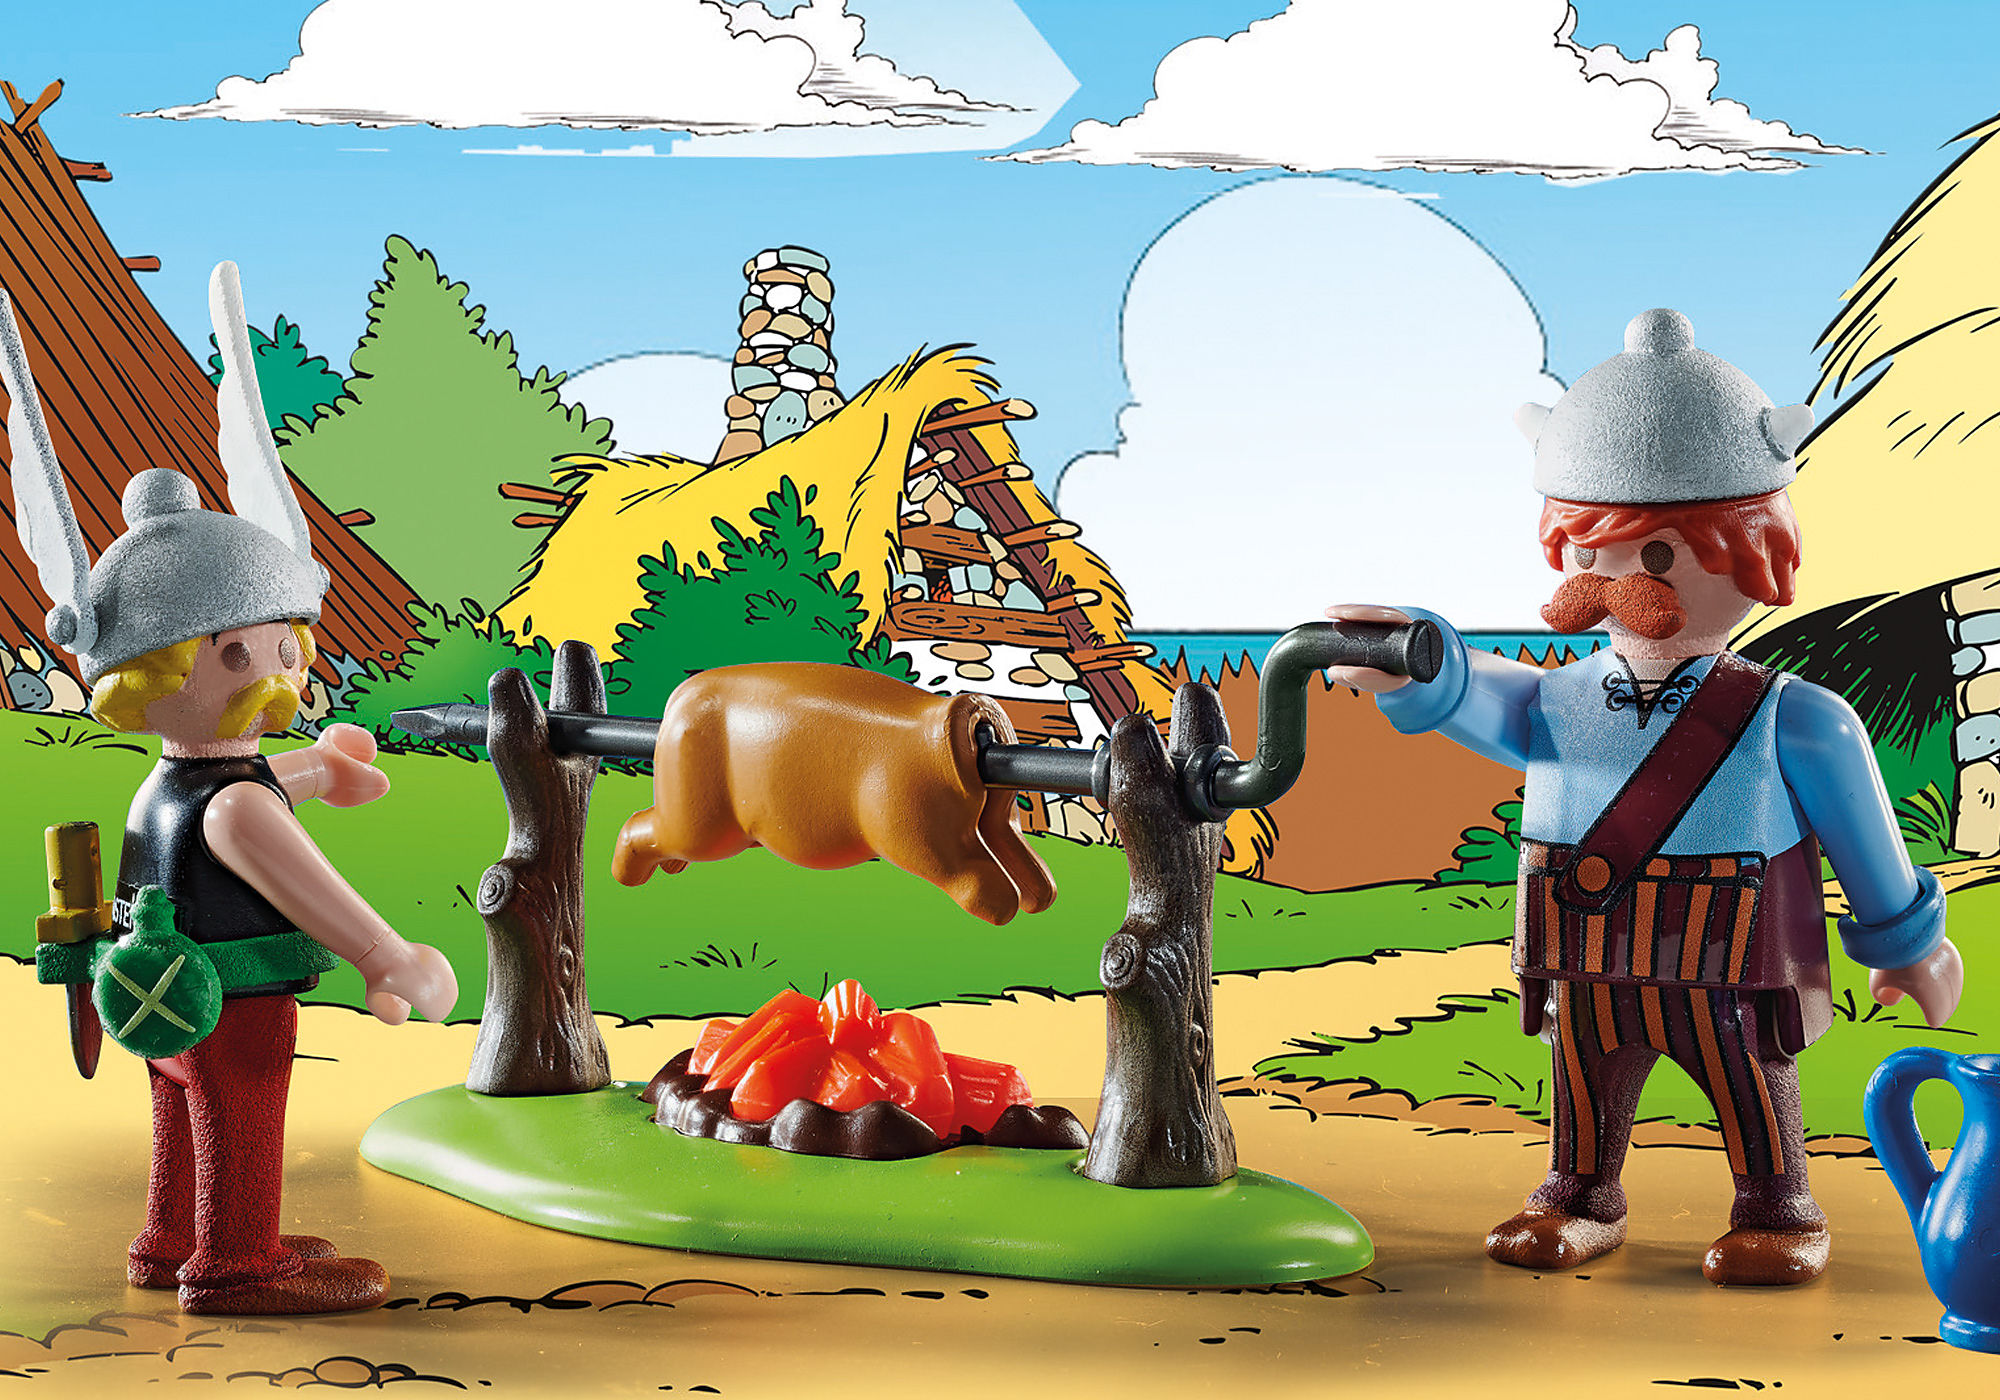 Des Playmobil à l'image d'Astérix et Obélix - ActuaBD